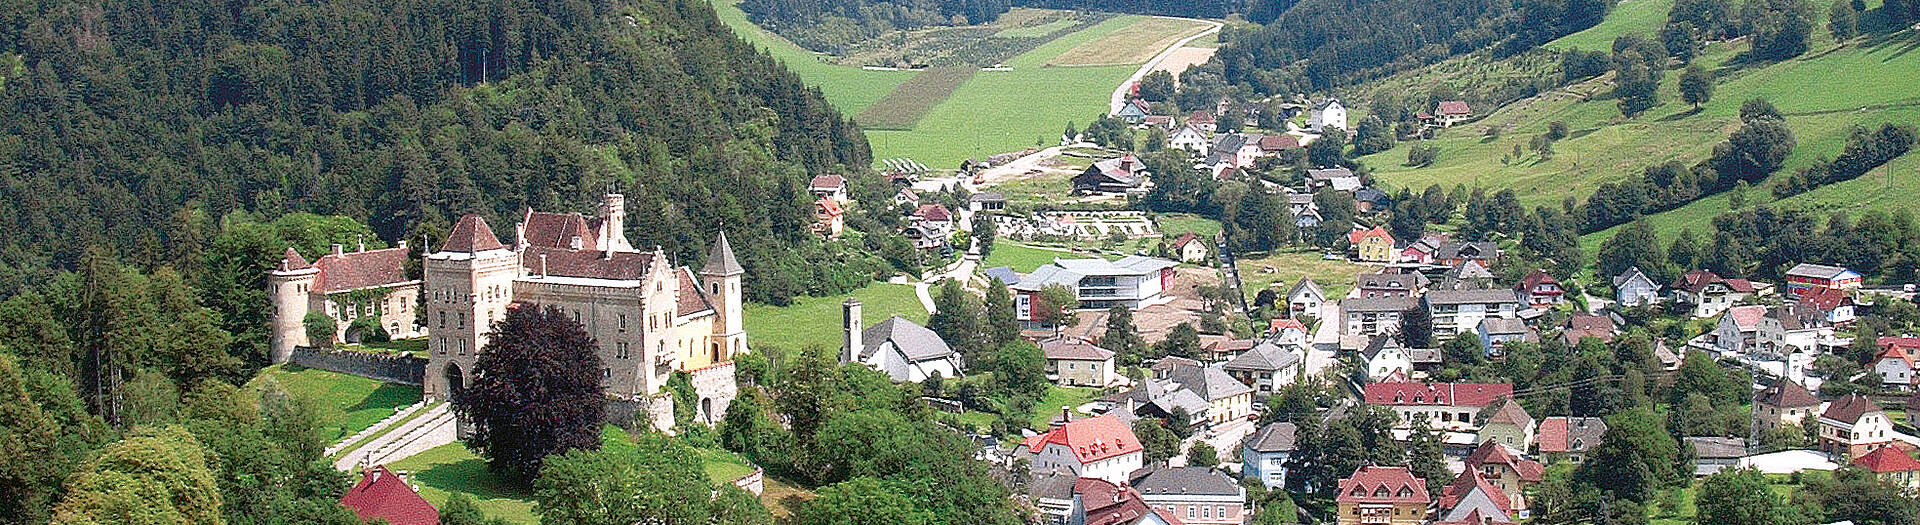 Eberstein Tourismusregion Mittelkärnten